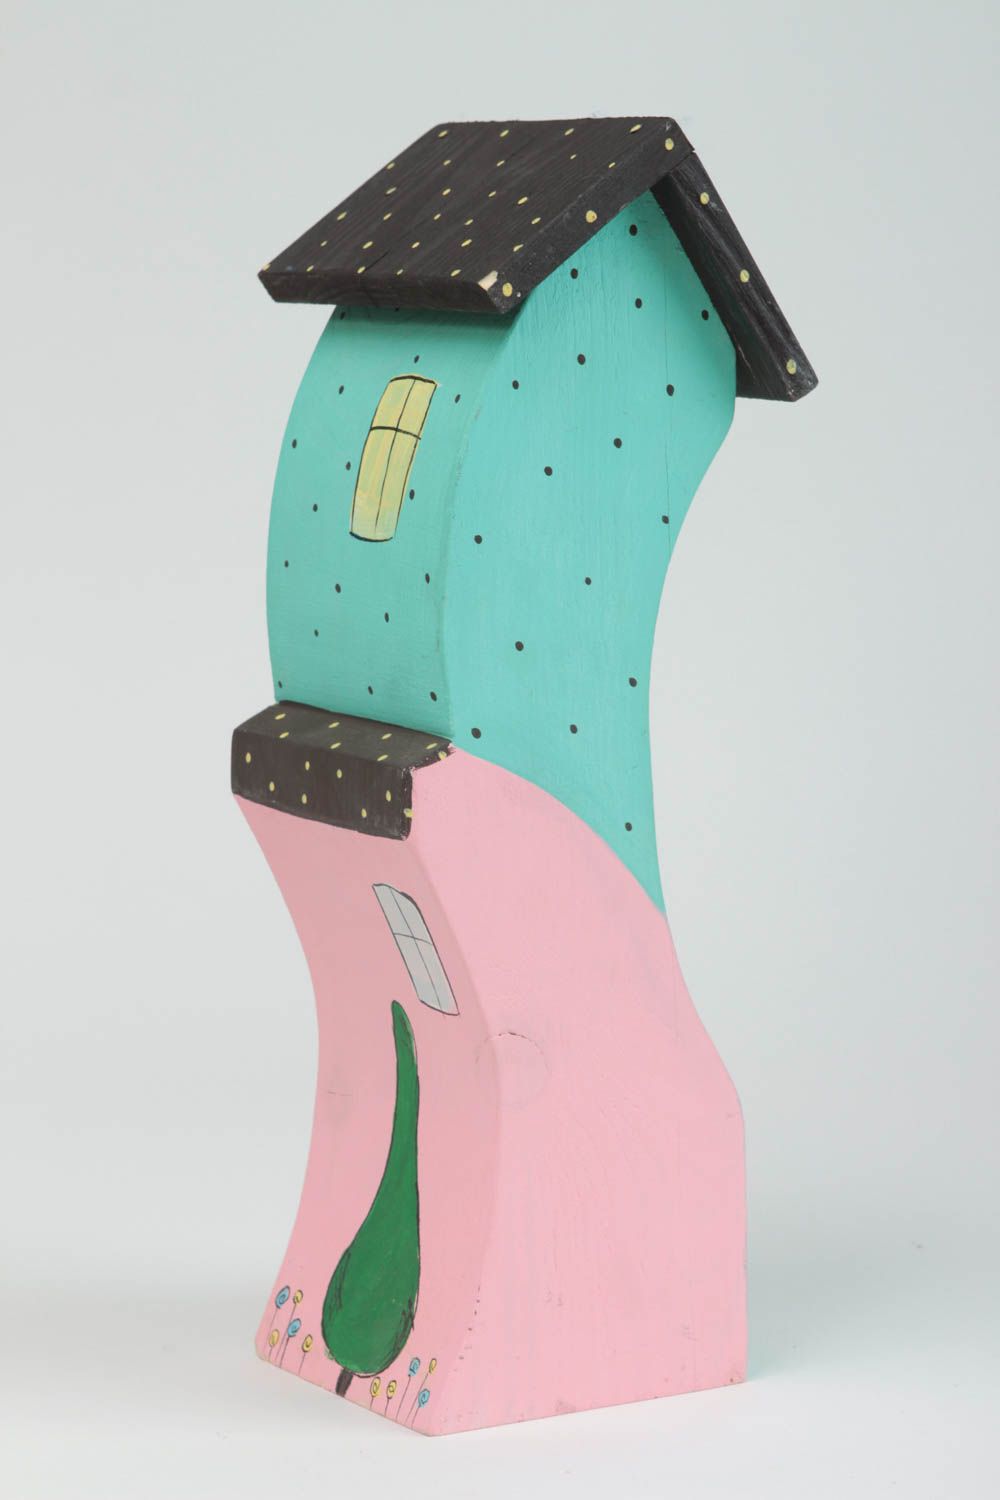 Деревянная фигурка в виде домиков яркая цветная красивая высокая ручной работы фото 3